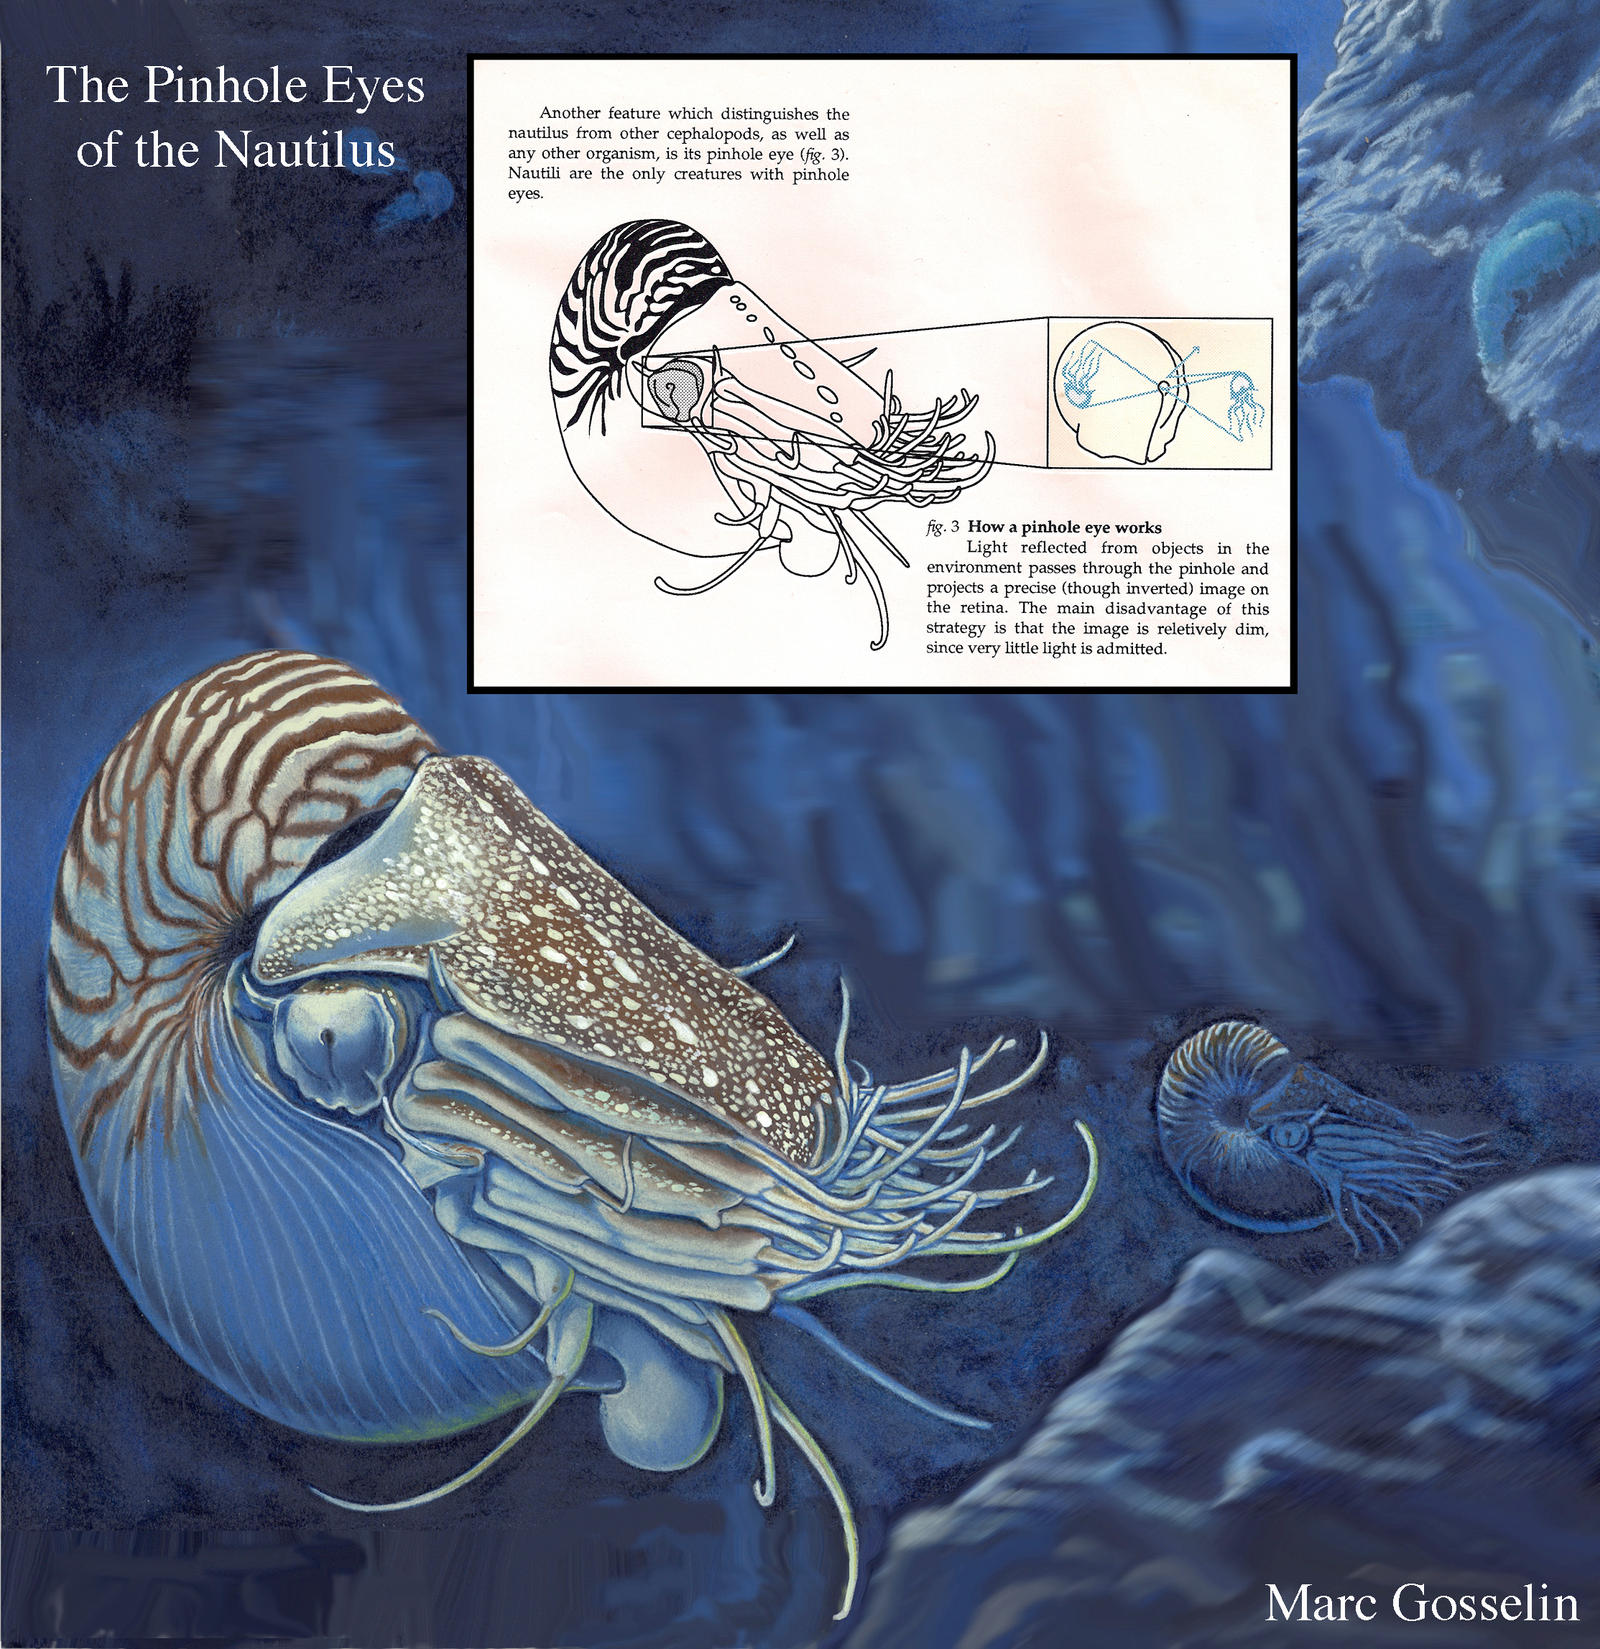 The Pinhole Eye of the Nautilus